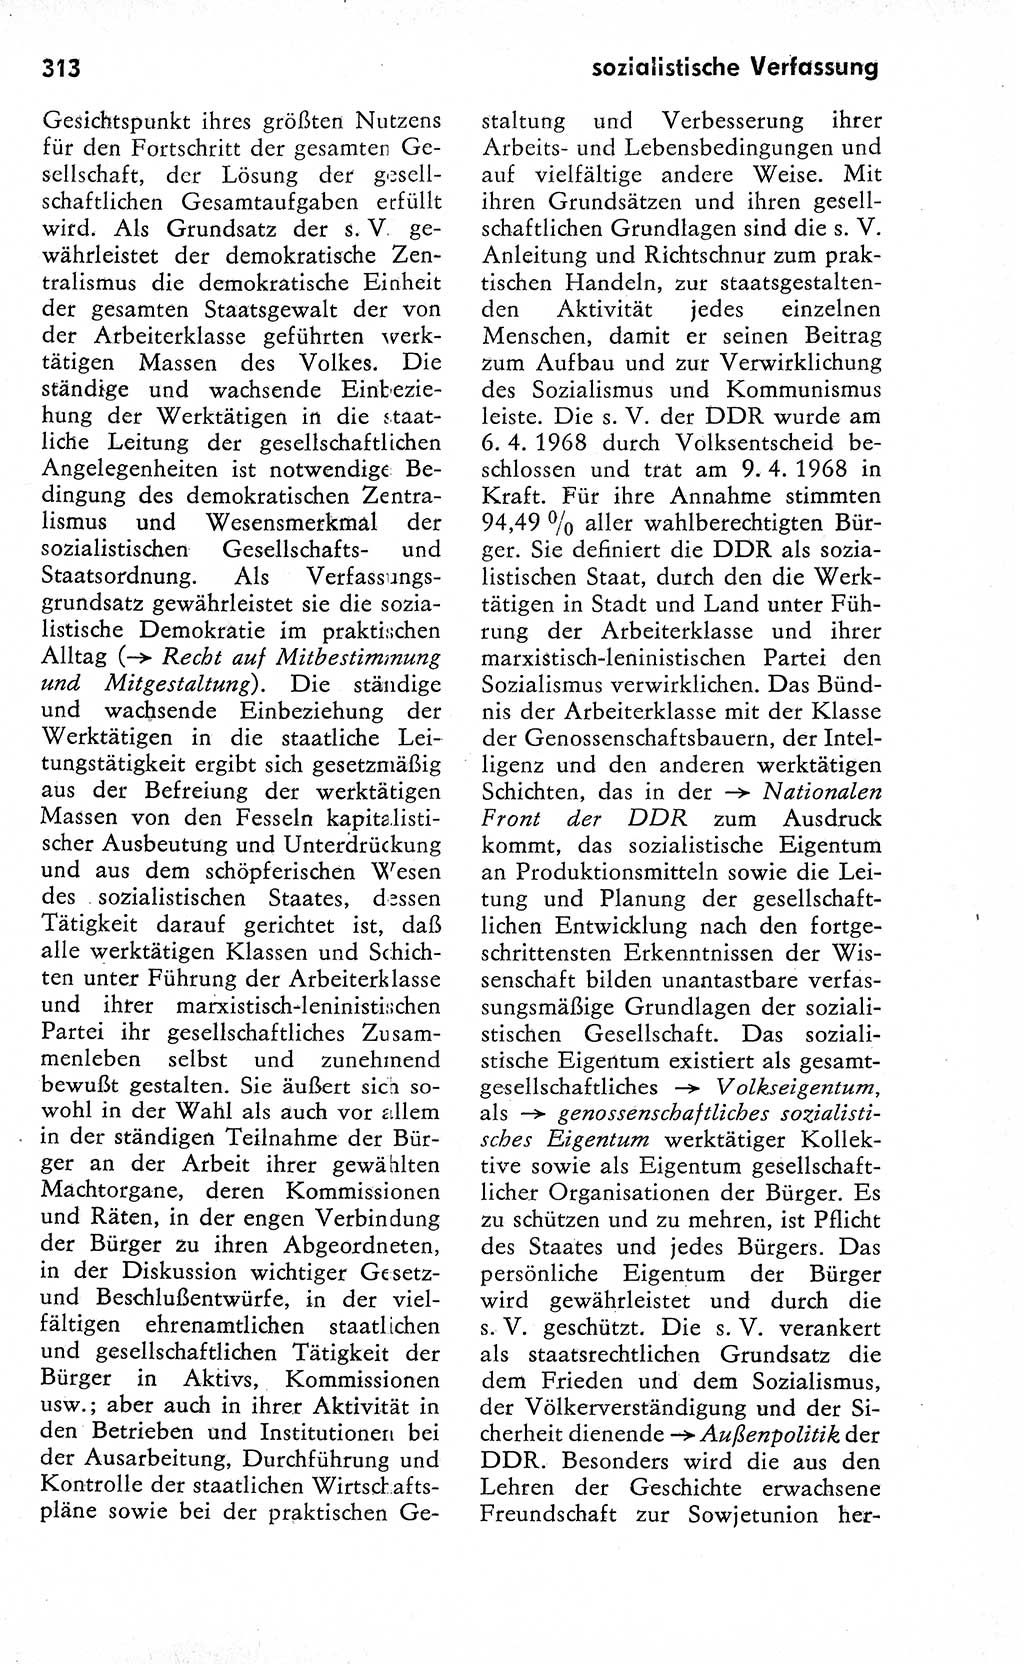 Wörterbuch zum sozialistischen Staat [Deutsche Demokratische Republik (DDR)] 1974, Seite 313 (Wb. soz. St. DDR 1974, S. 313)